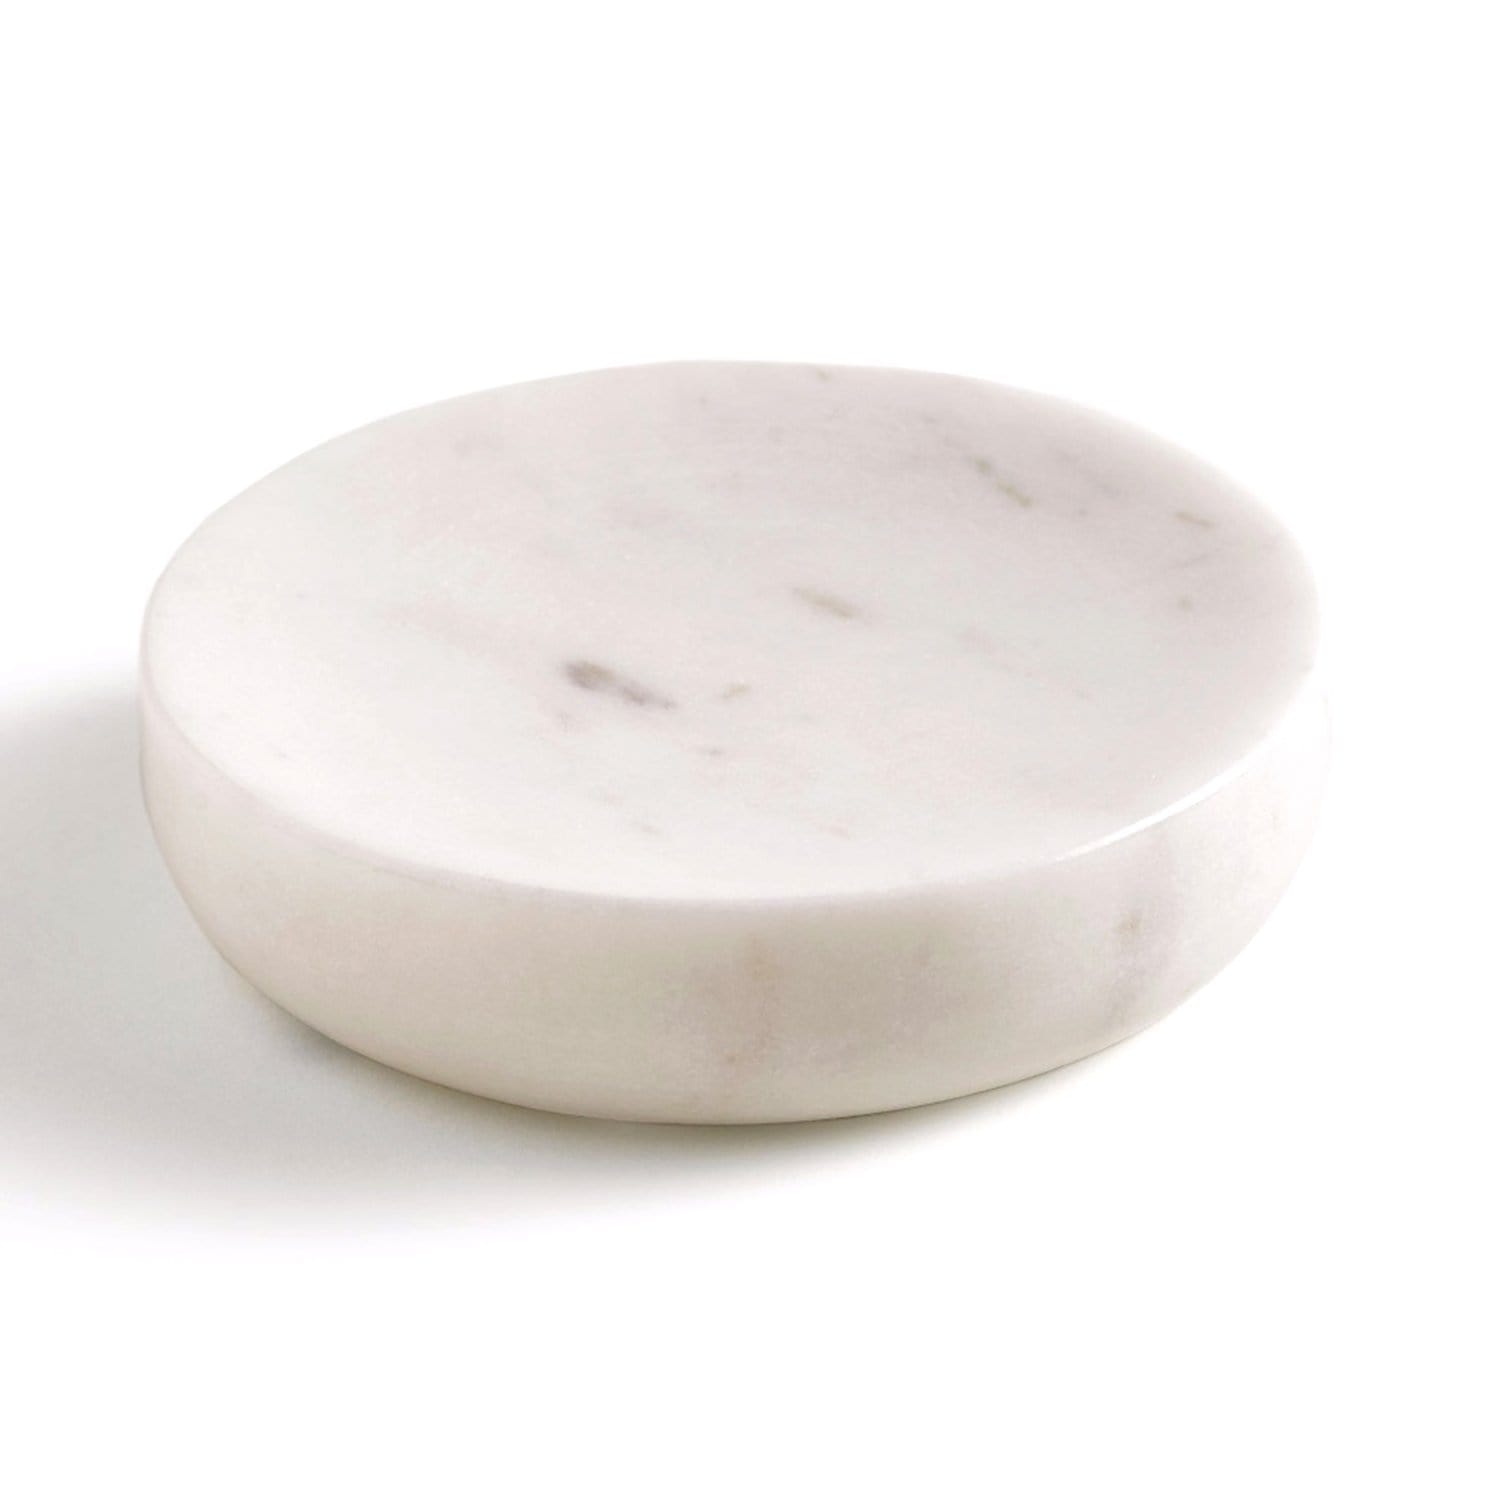 Kassatex Pietra Calacatta Marble Soap Dish - White - APT-SD - Jashanmal Home